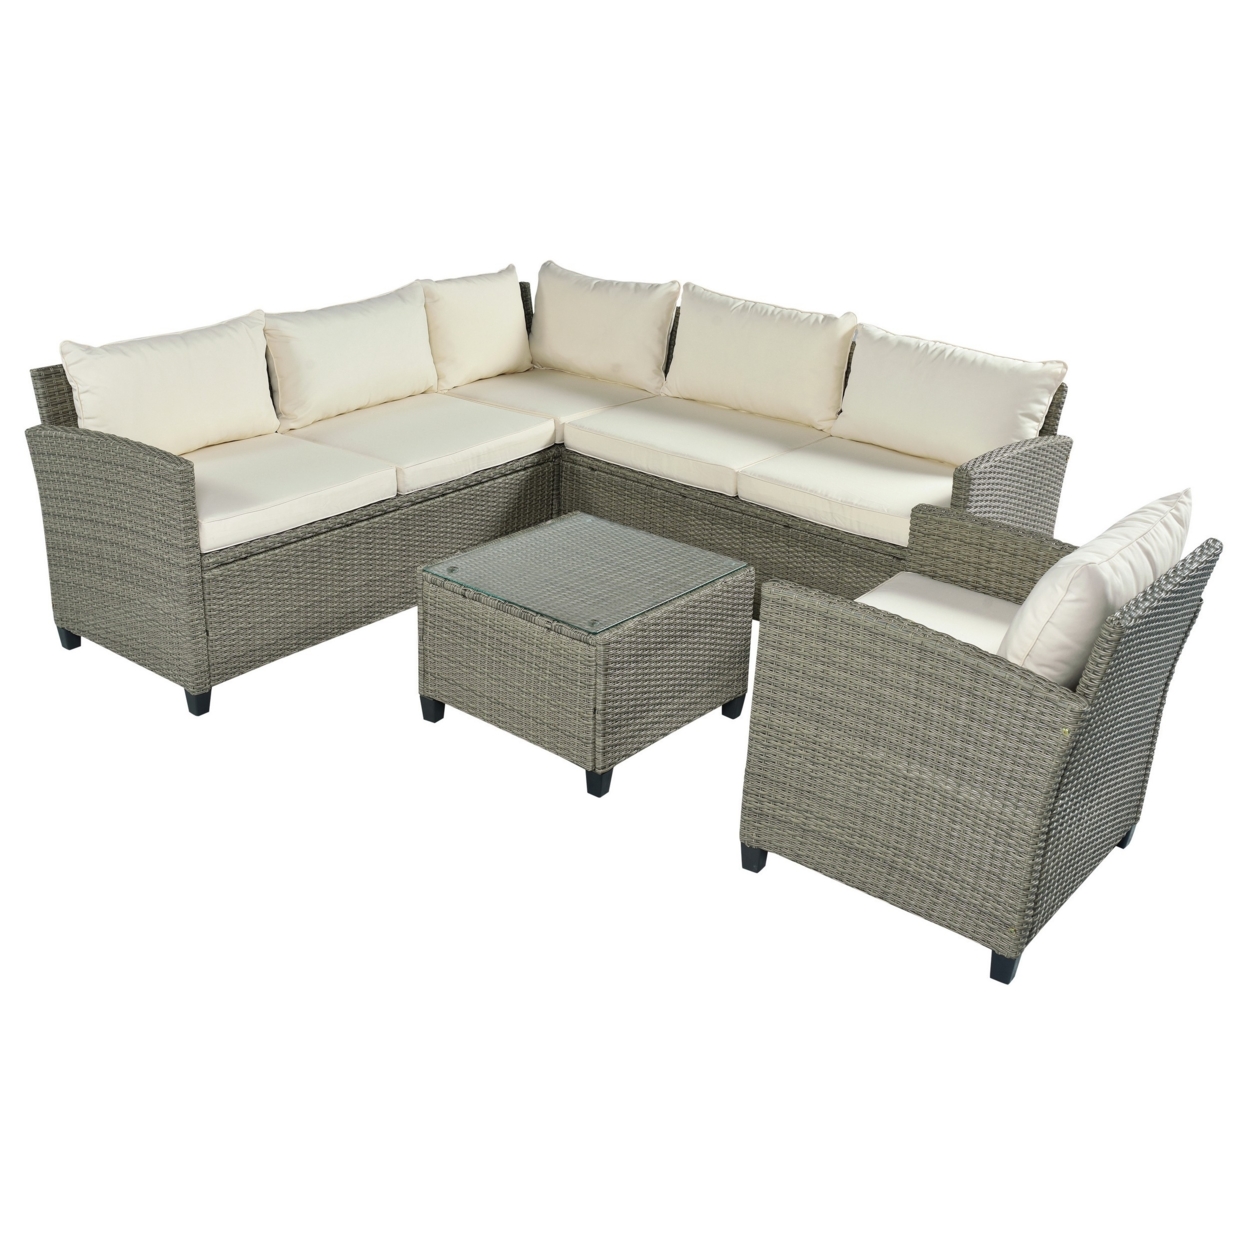 Han 5 Piece Outdoor Patio Sectional Sofa Set, Gray Rattan, Beige Cushions- Saltoro Sherpi